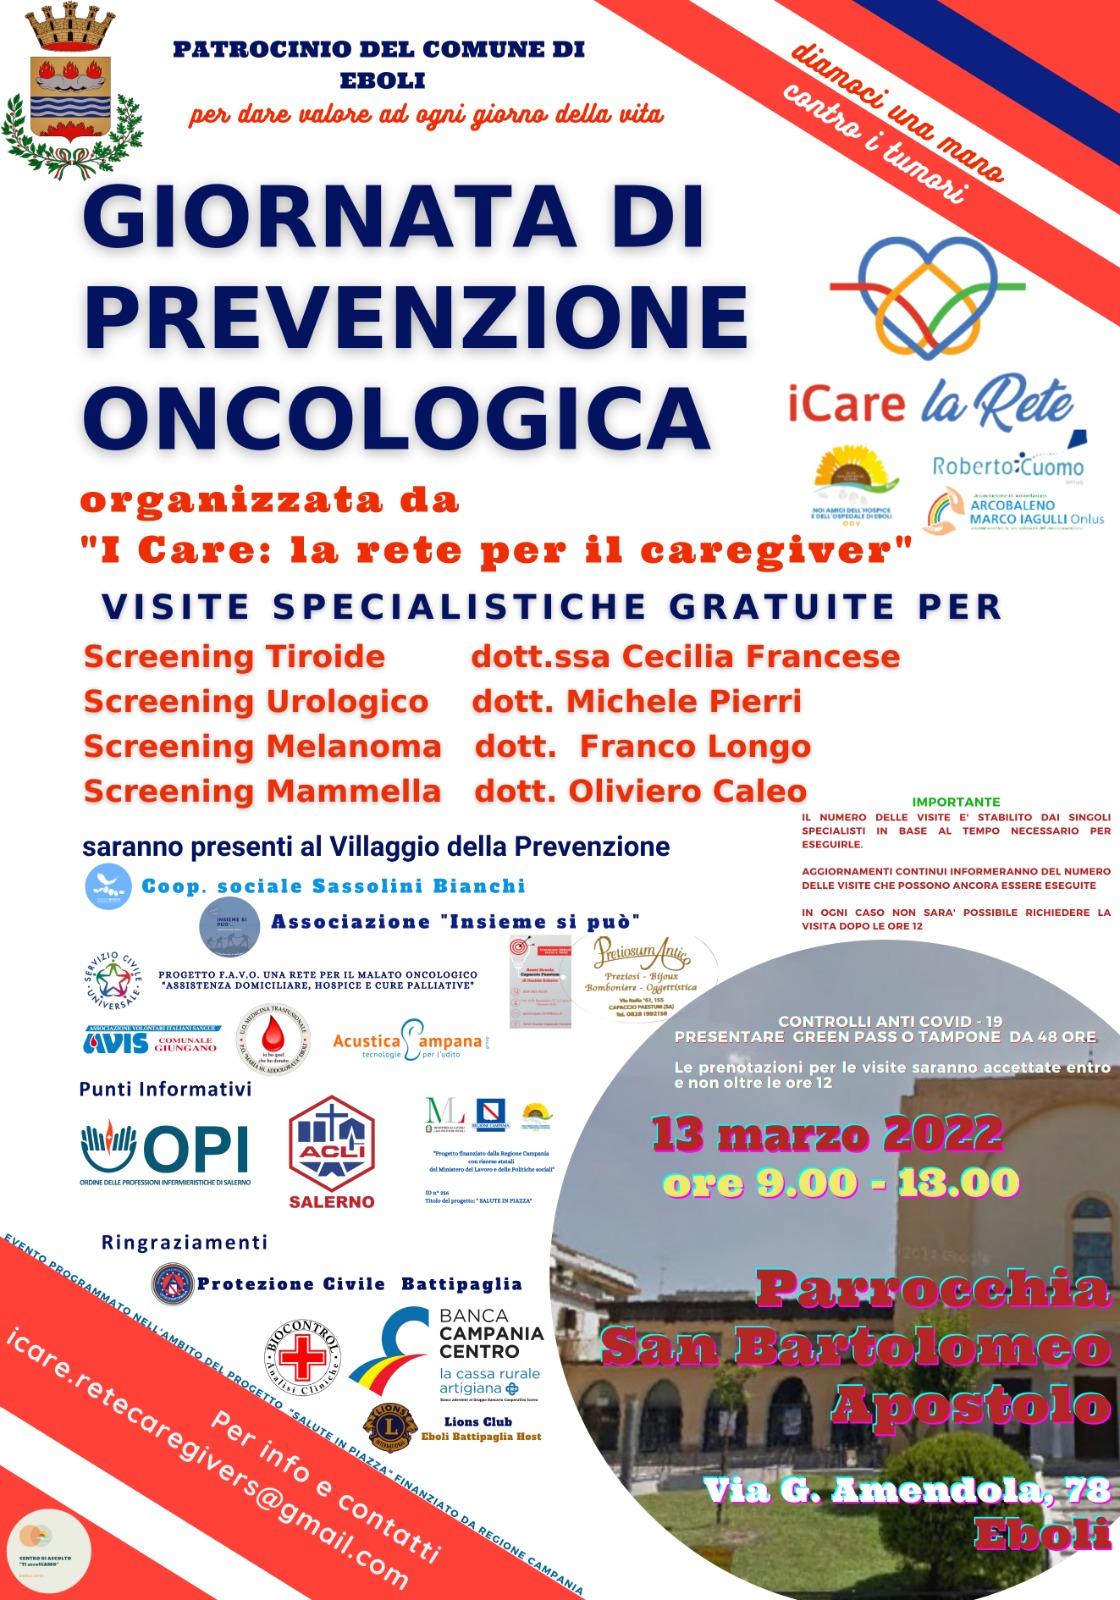 «Giornata di prevenzione oncologica»: Domenica 13 marzo, a partire dalle ore 9 e fino alle ore 13, presso la Parrocchia di S. Bartolomeo Apostolo, Eboli